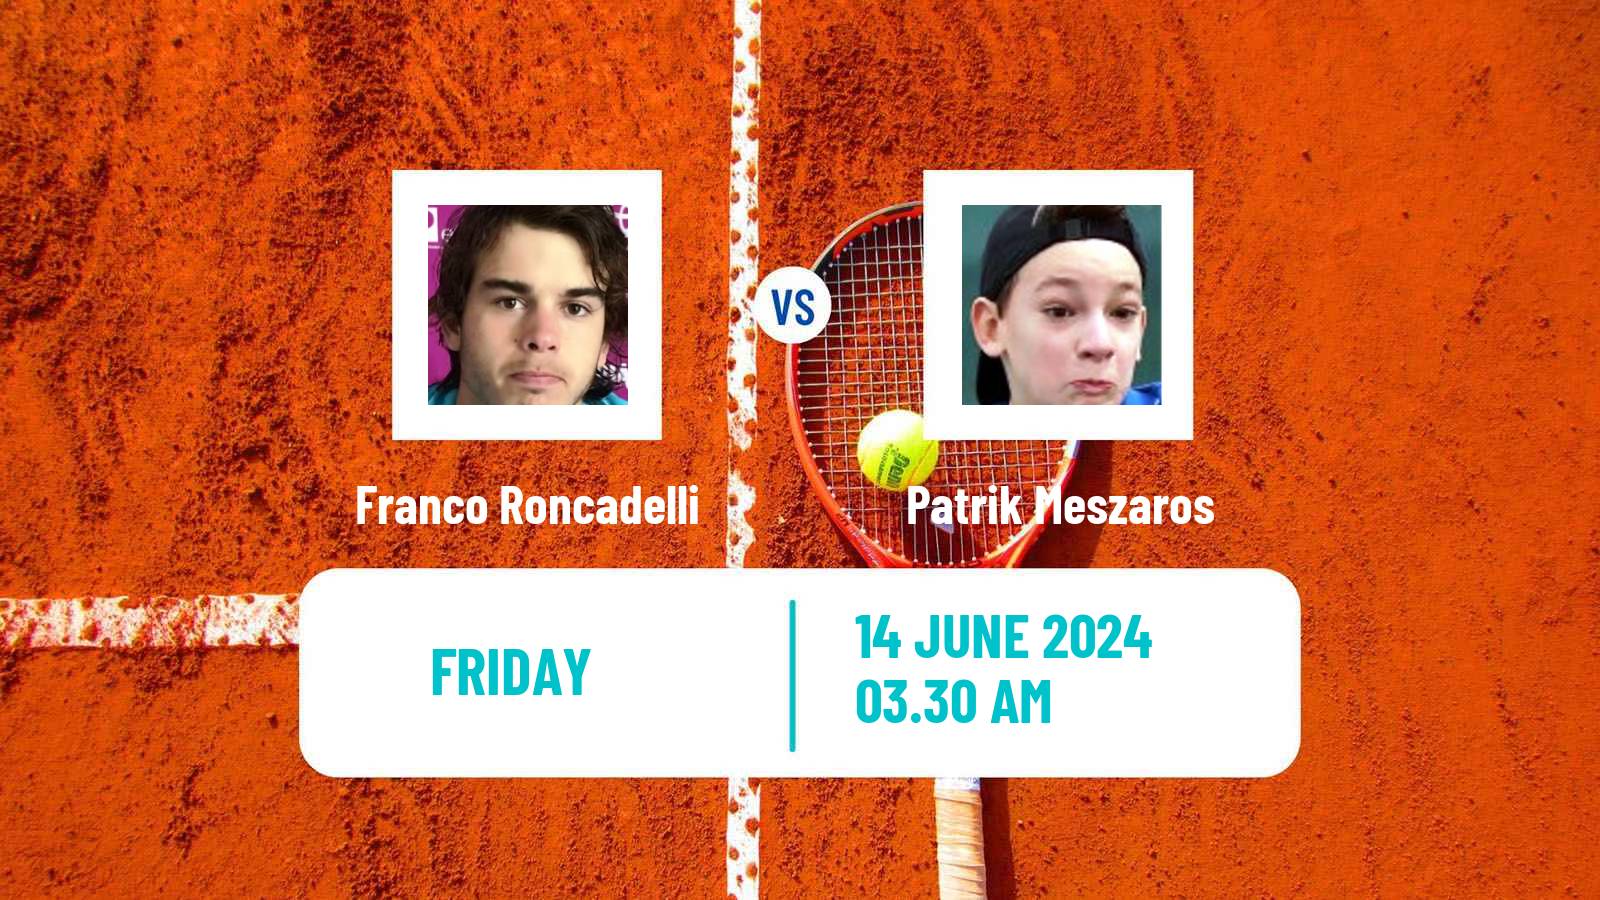 Tennis ITF M15 Nyiregyhaza Men Franco Roncadelli - Patrik Meszaros